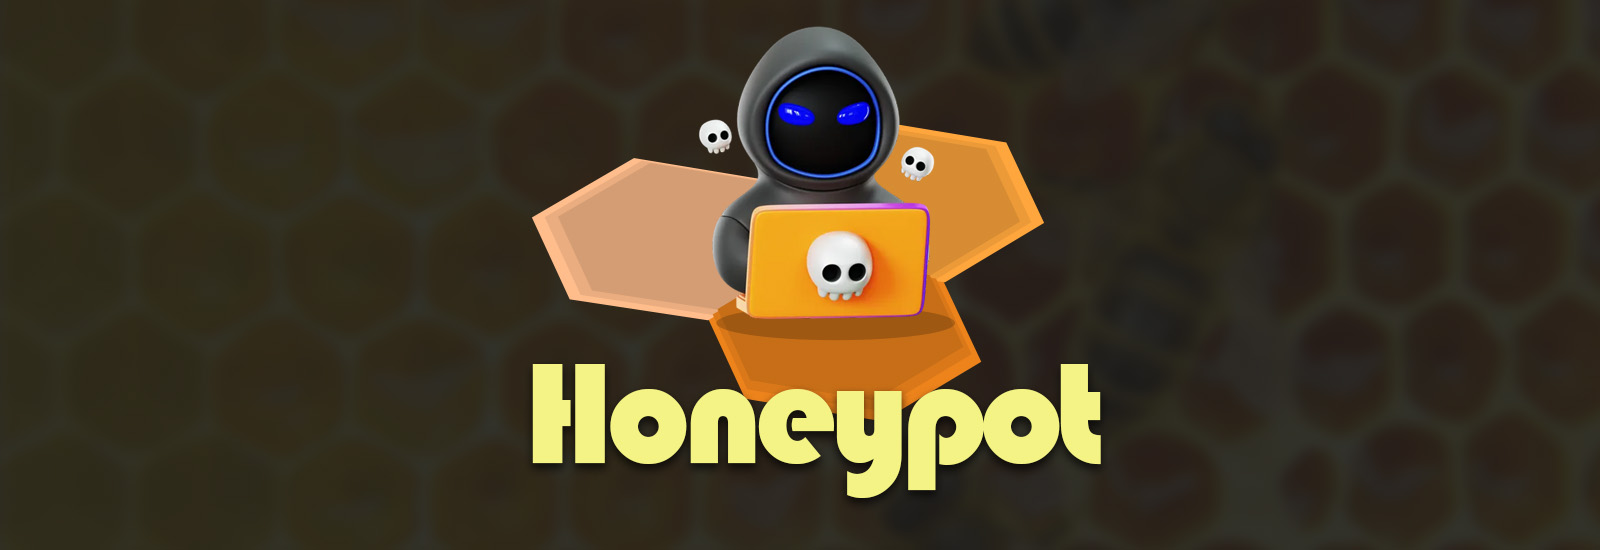 Honeypot یا هانی پات چیست؟